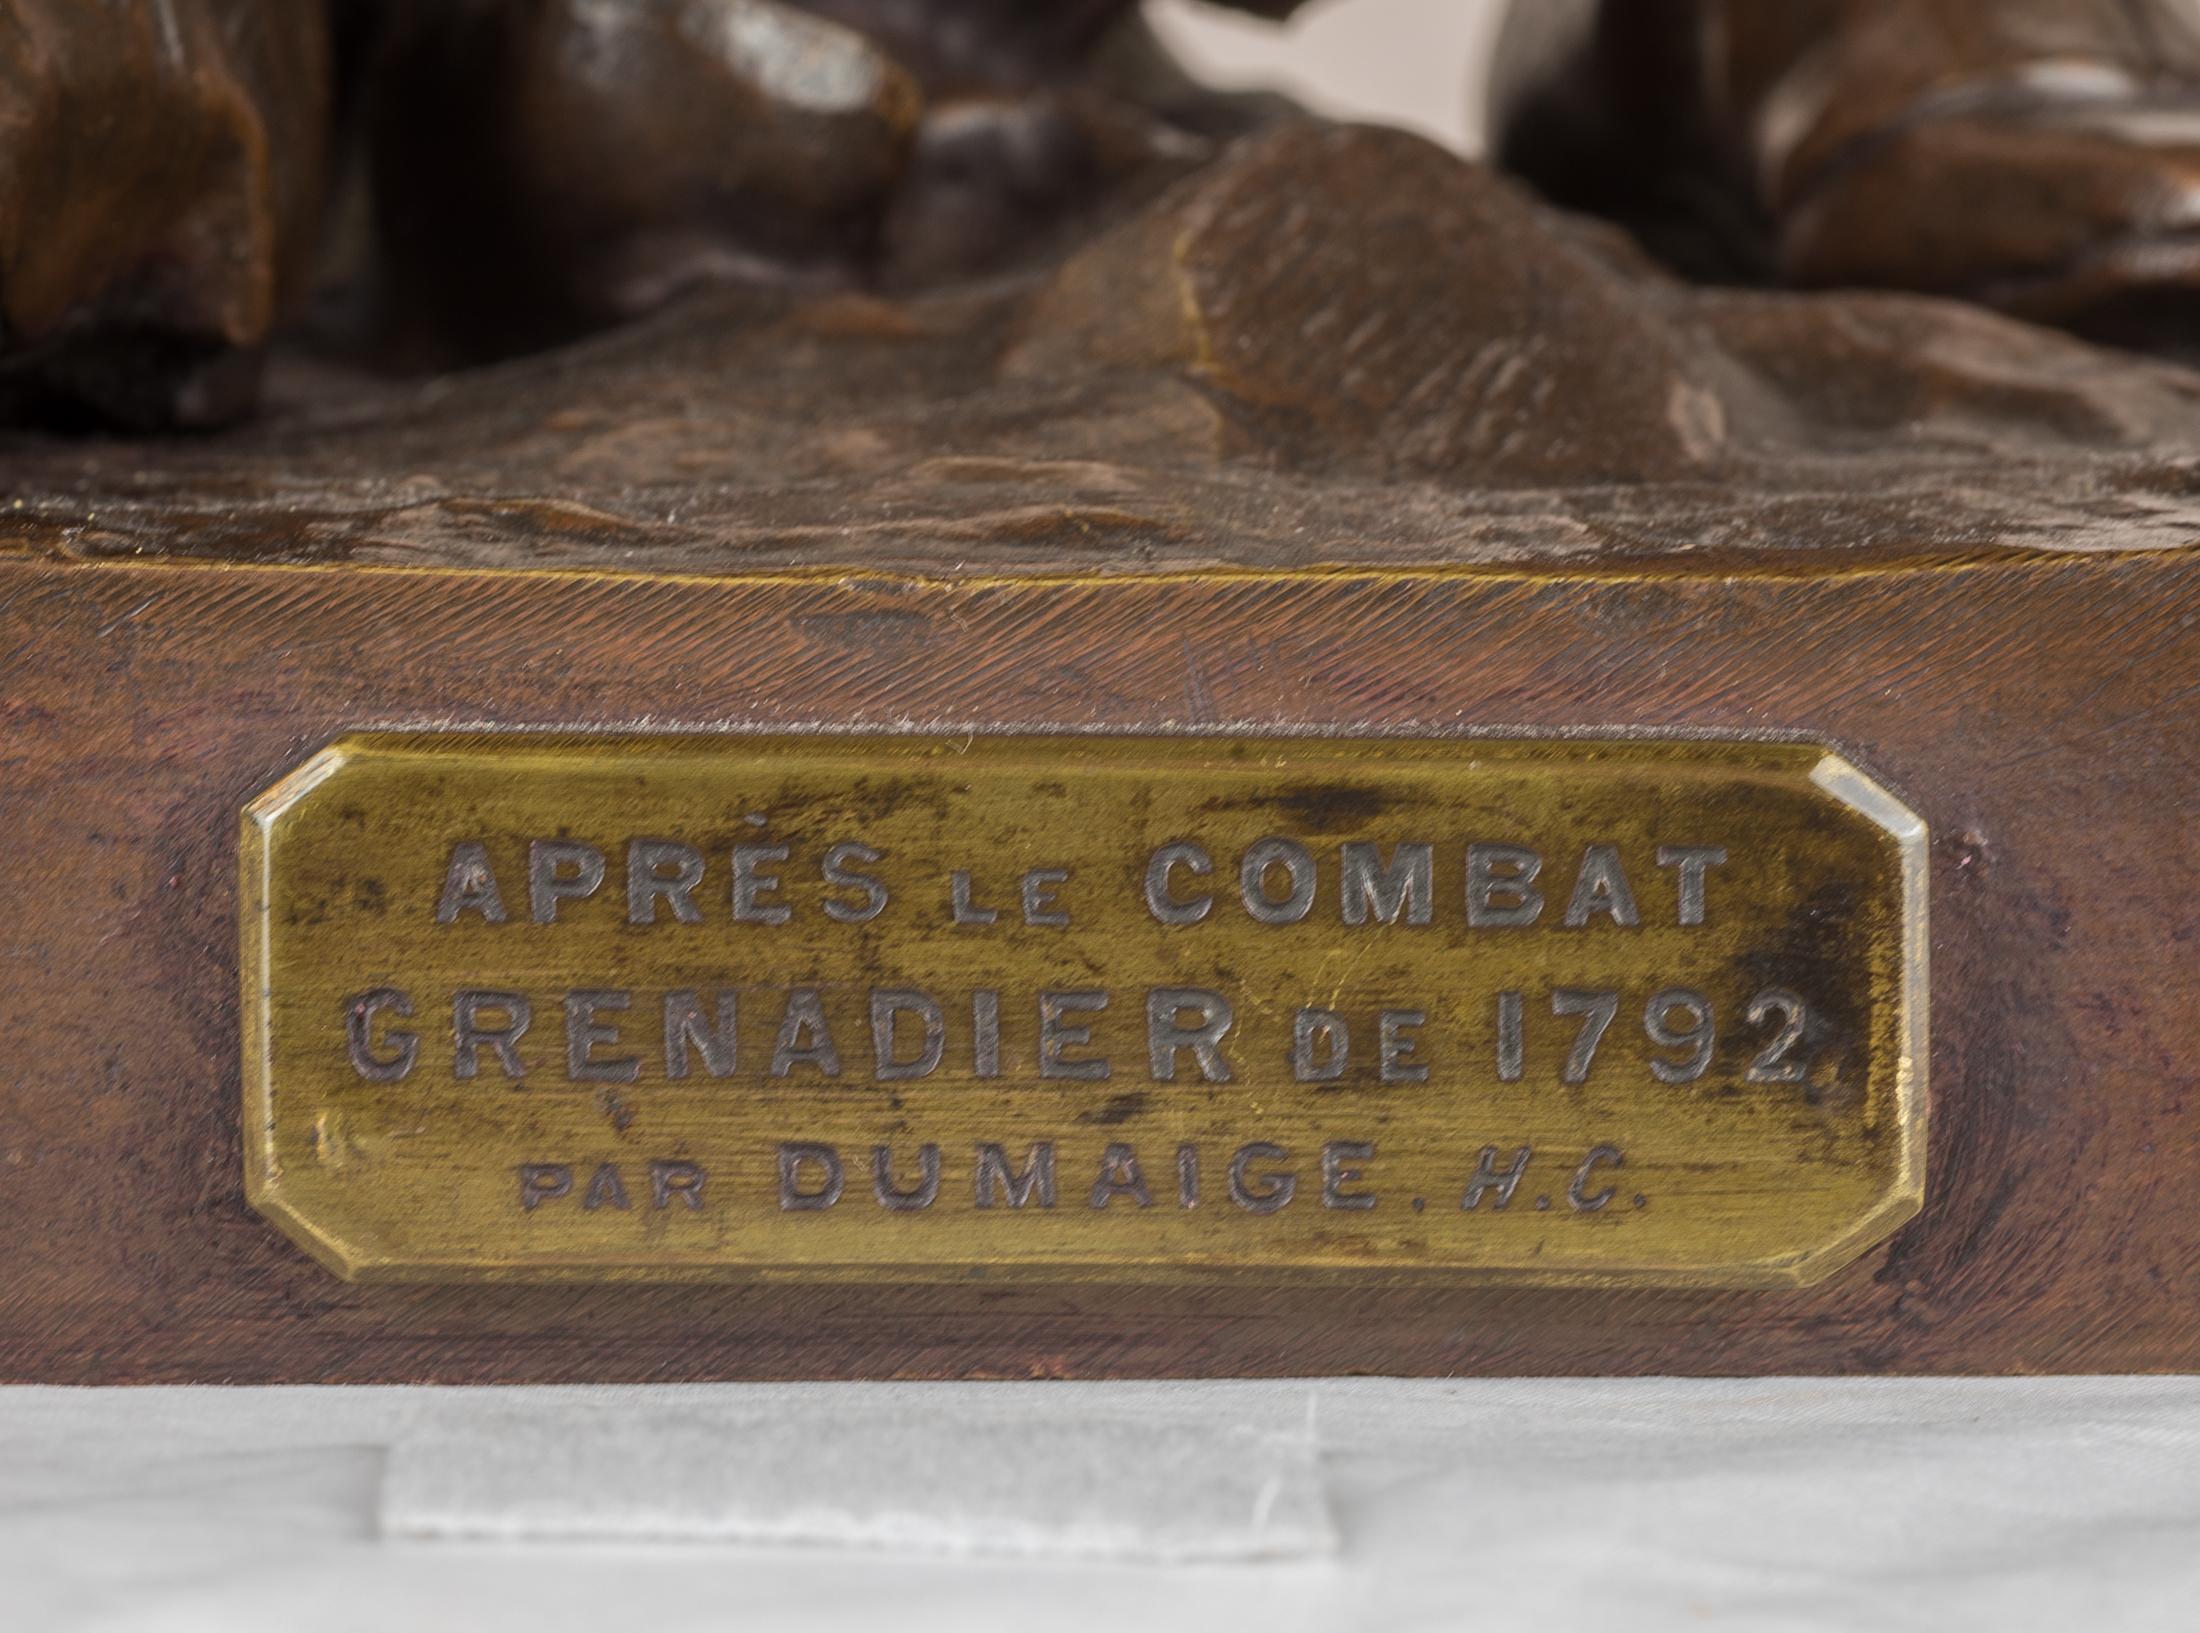 ÉTIENNE-HENRI DUMAIGE  
French, (1830-1888)

Avant Le Combat, Apres Le Combat

Pair of patinated bronze; signed 'H. Dumaige' and titled ‘AVANT LE COMBAT, APRÈS LE COMBAT, GRENADIER DE, 1792’ 
25 1/2 x 12 x 11 1/2 inches 